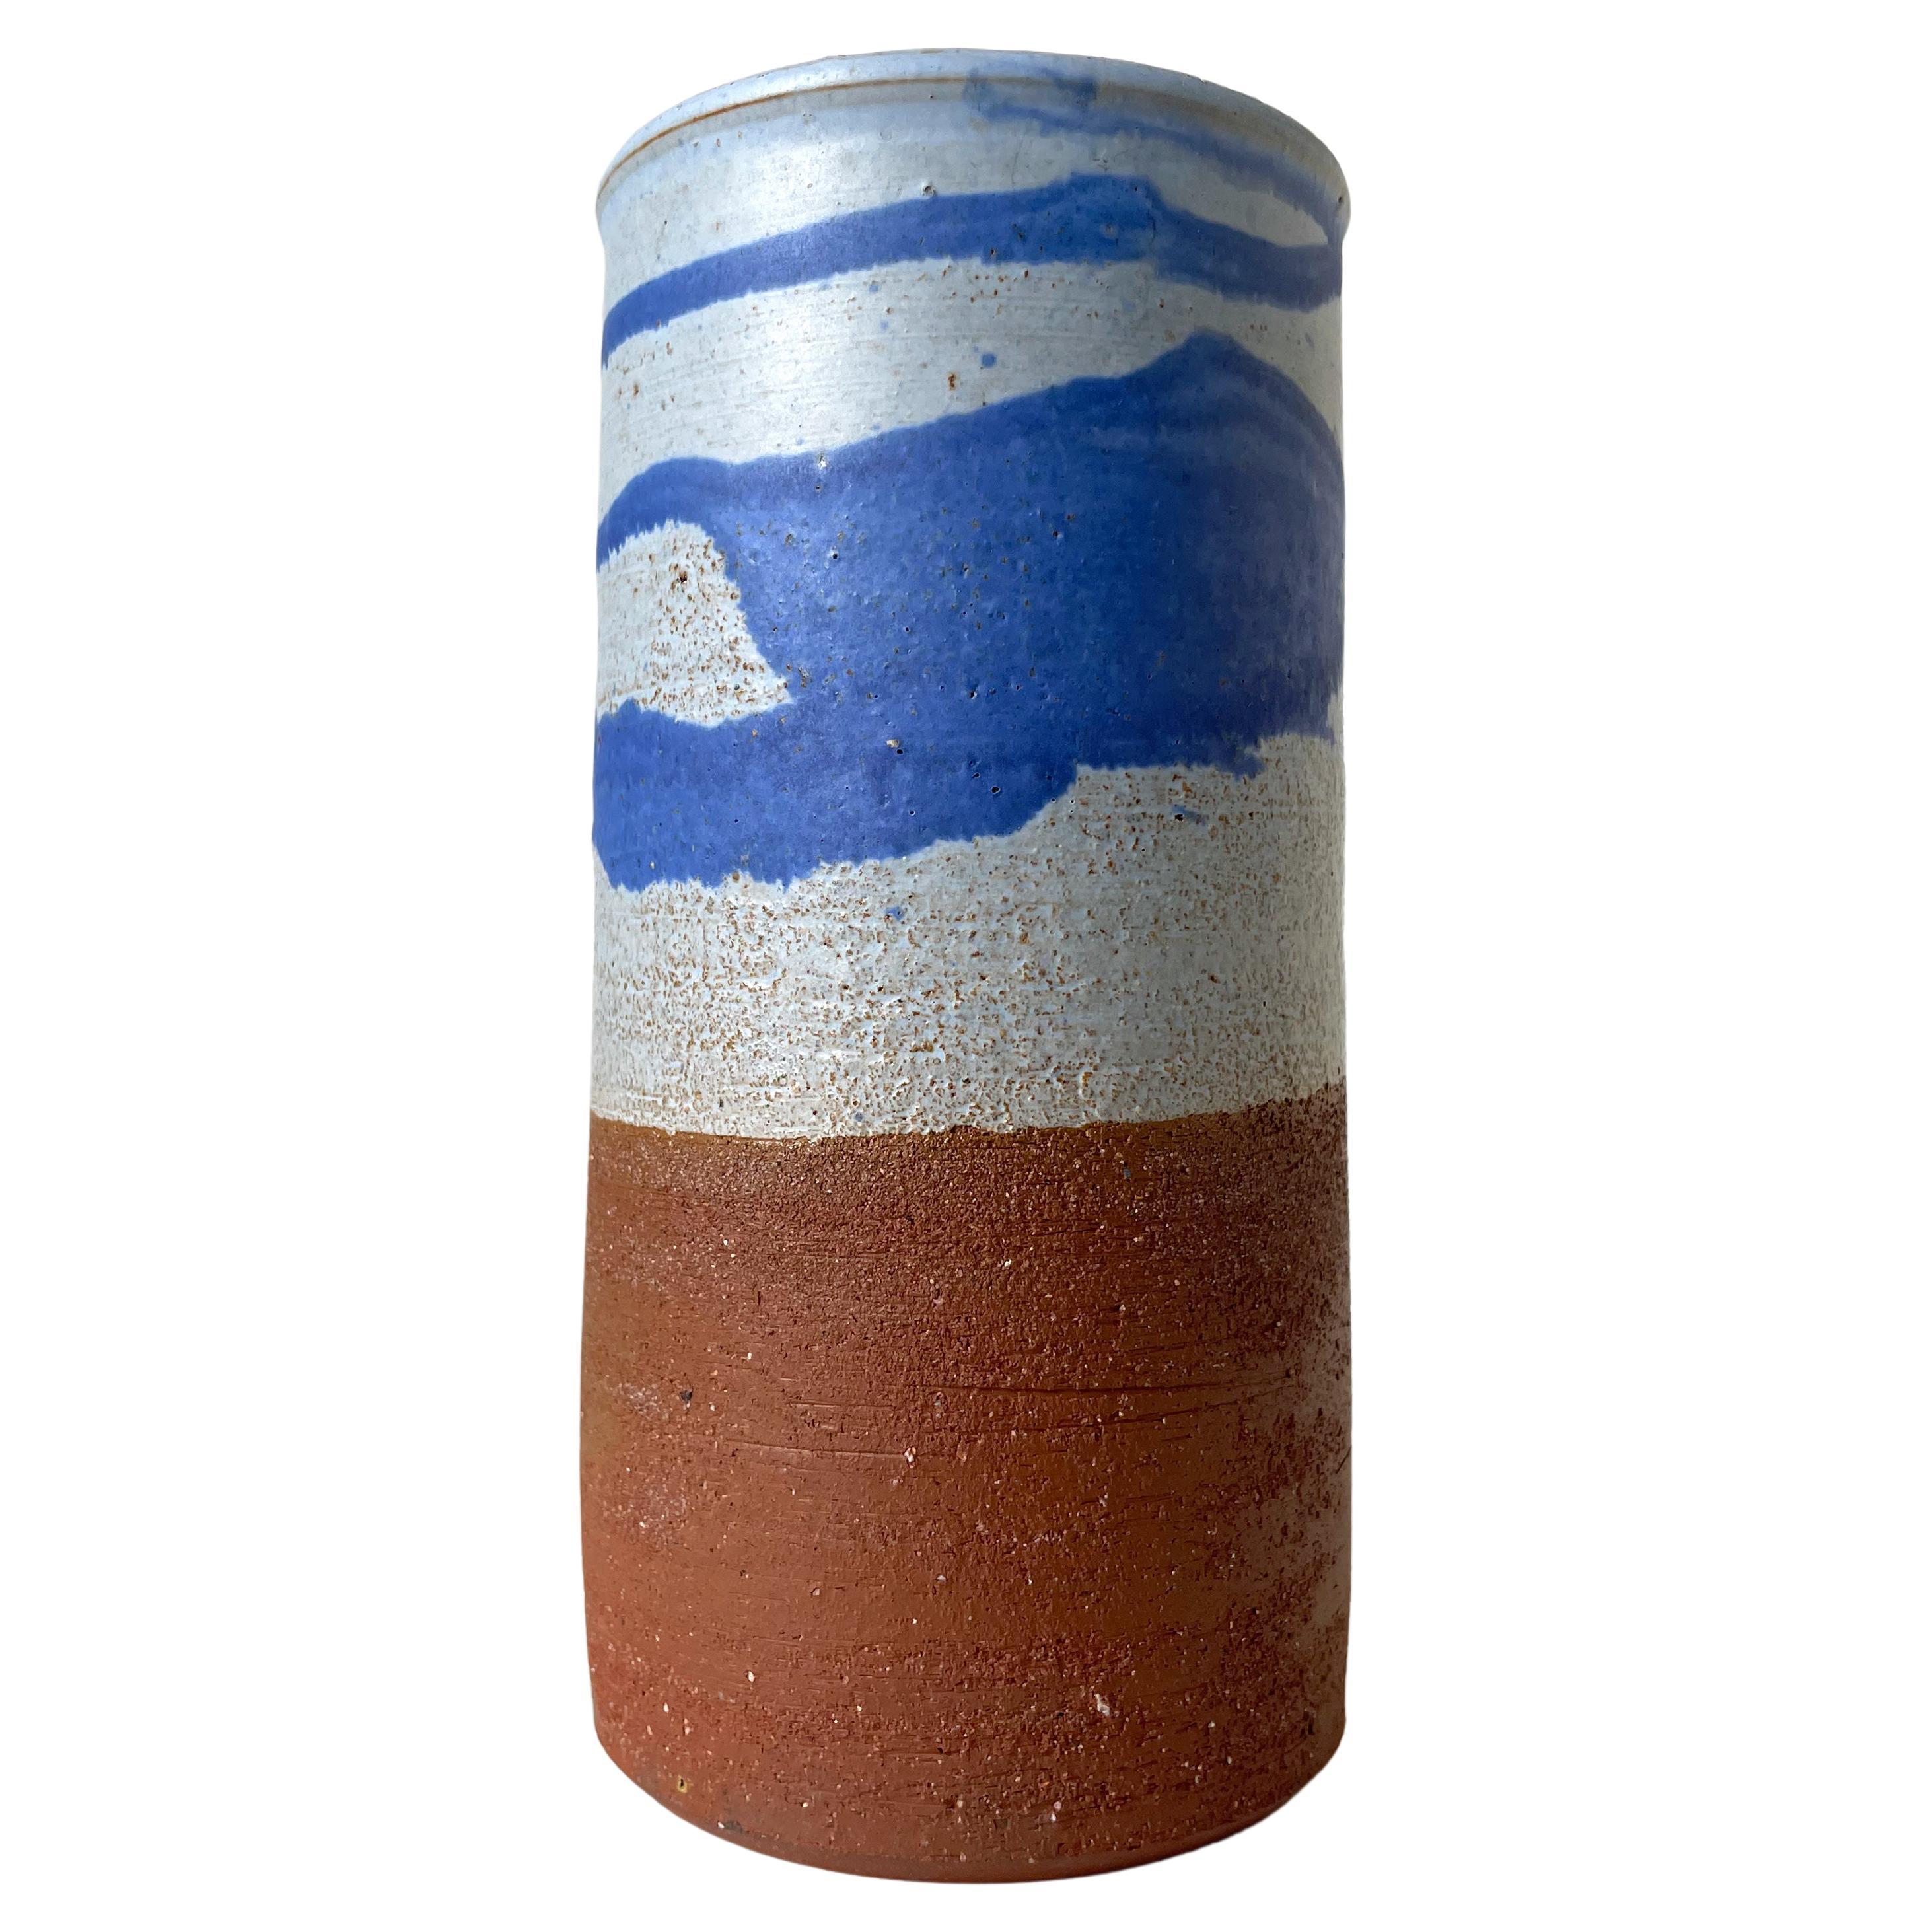 Vase cylindrique scandinave moderne des années 1960, décoré d'éclaboussures bleues